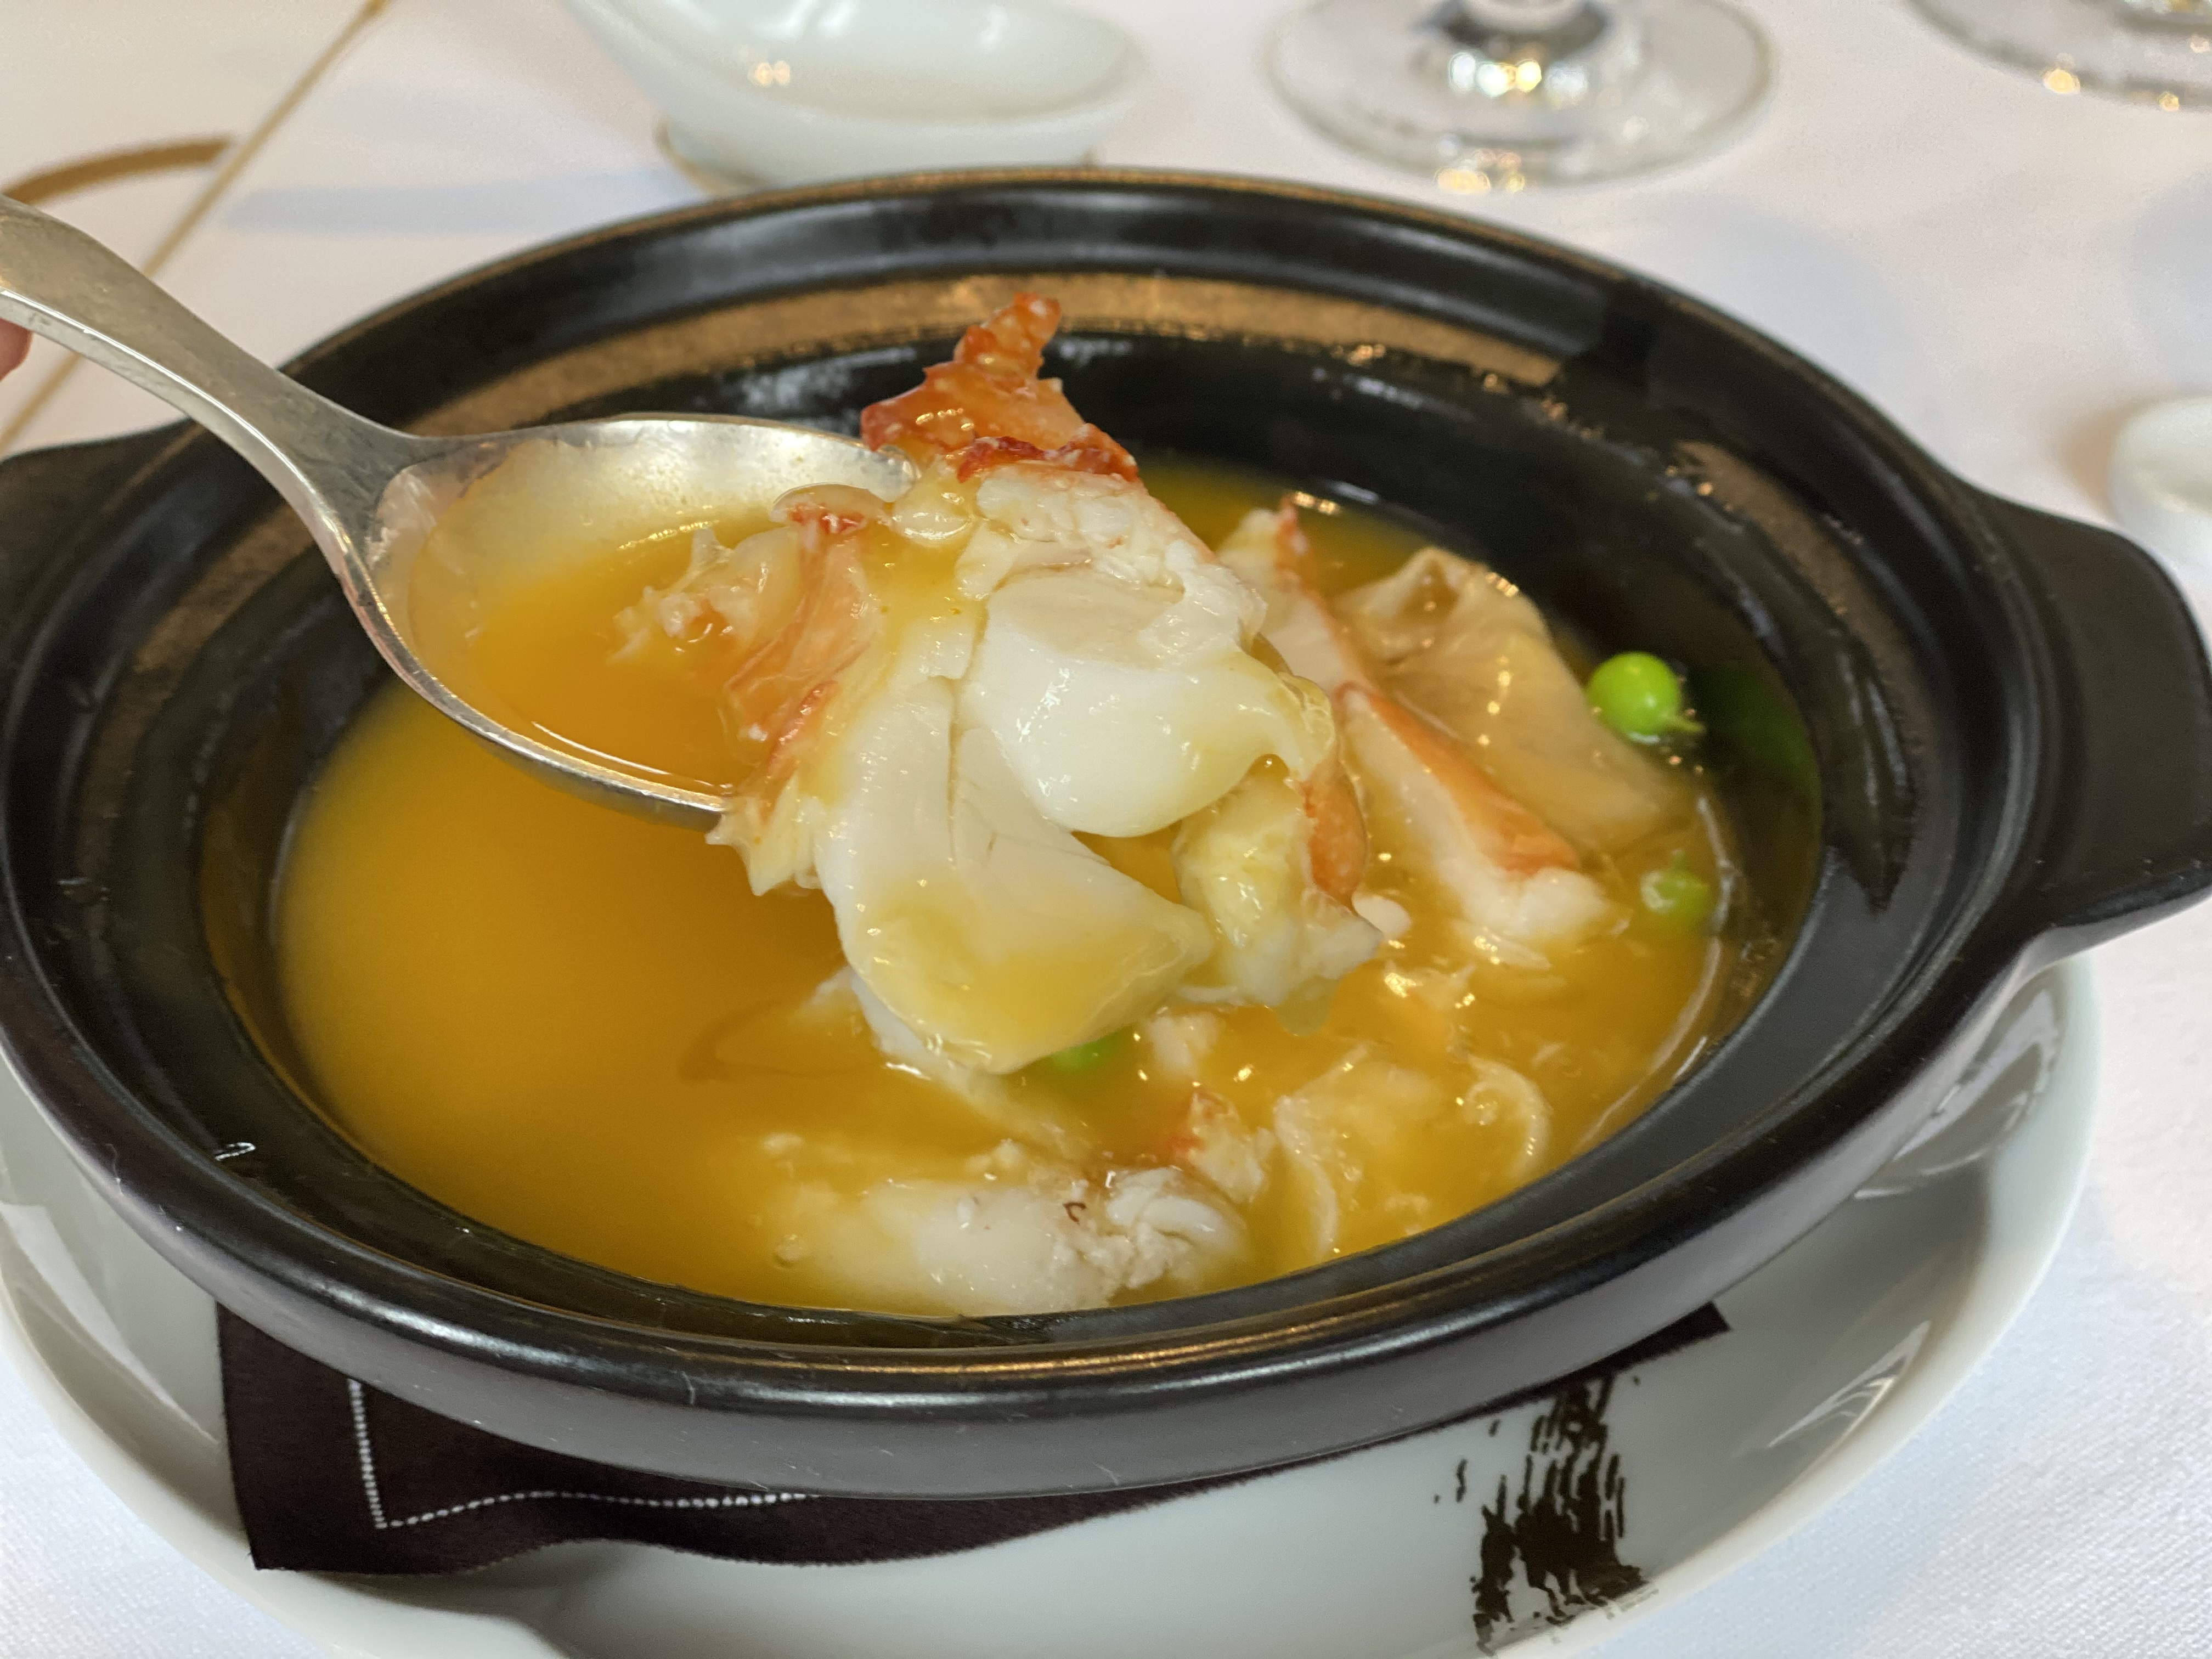 【上海】海派风情的美丽粤菜餐厅 时空交会点上的一颗明珠